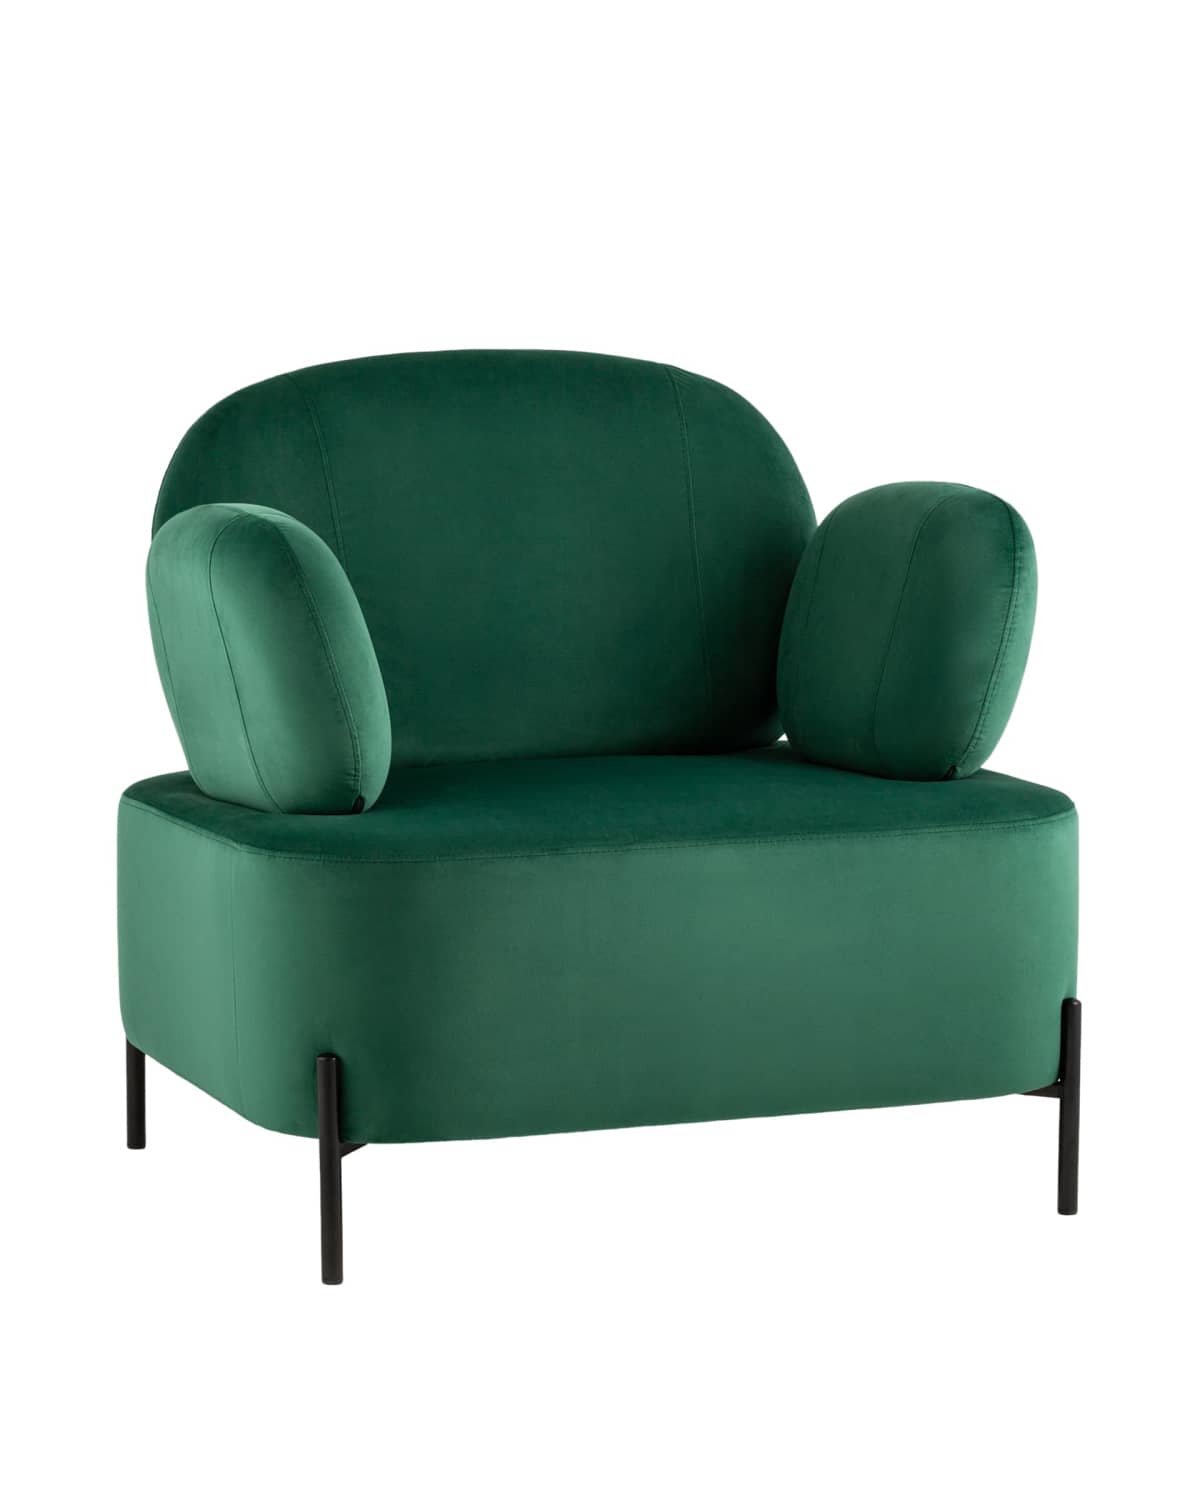 Кресло Кэнди с подлокотниками велюр зелёный - изображение 1